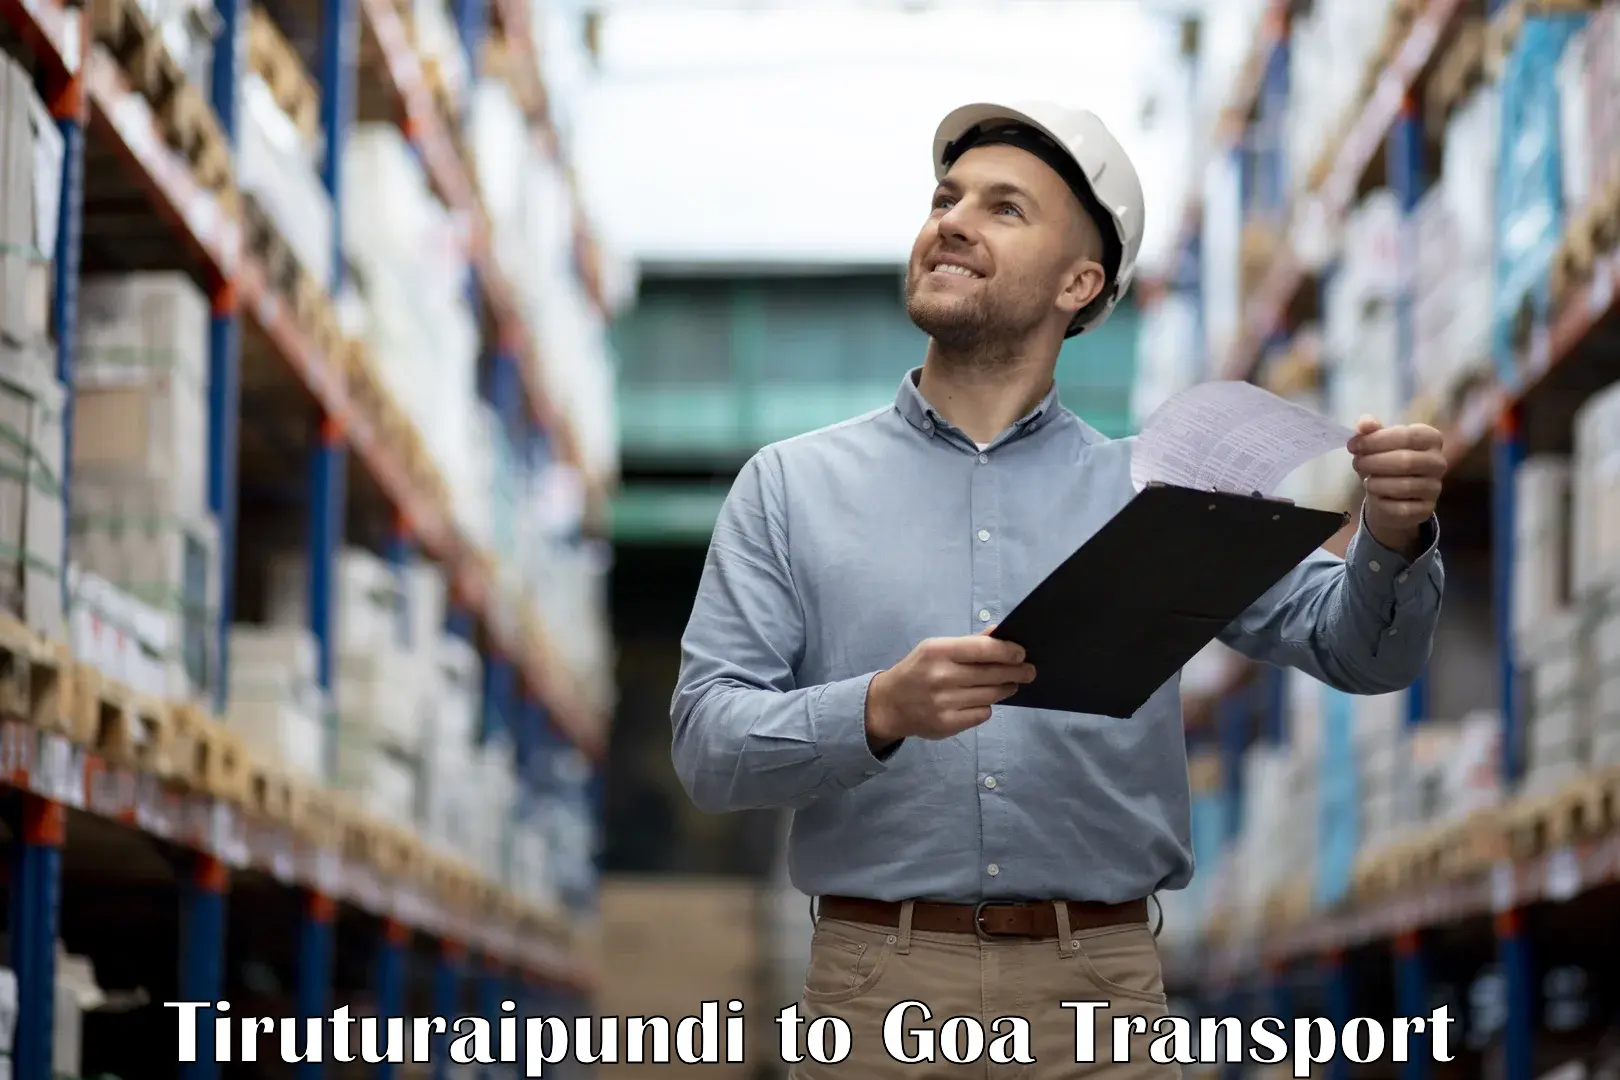 Pick up transport service Tiruturaipundi to Panjim